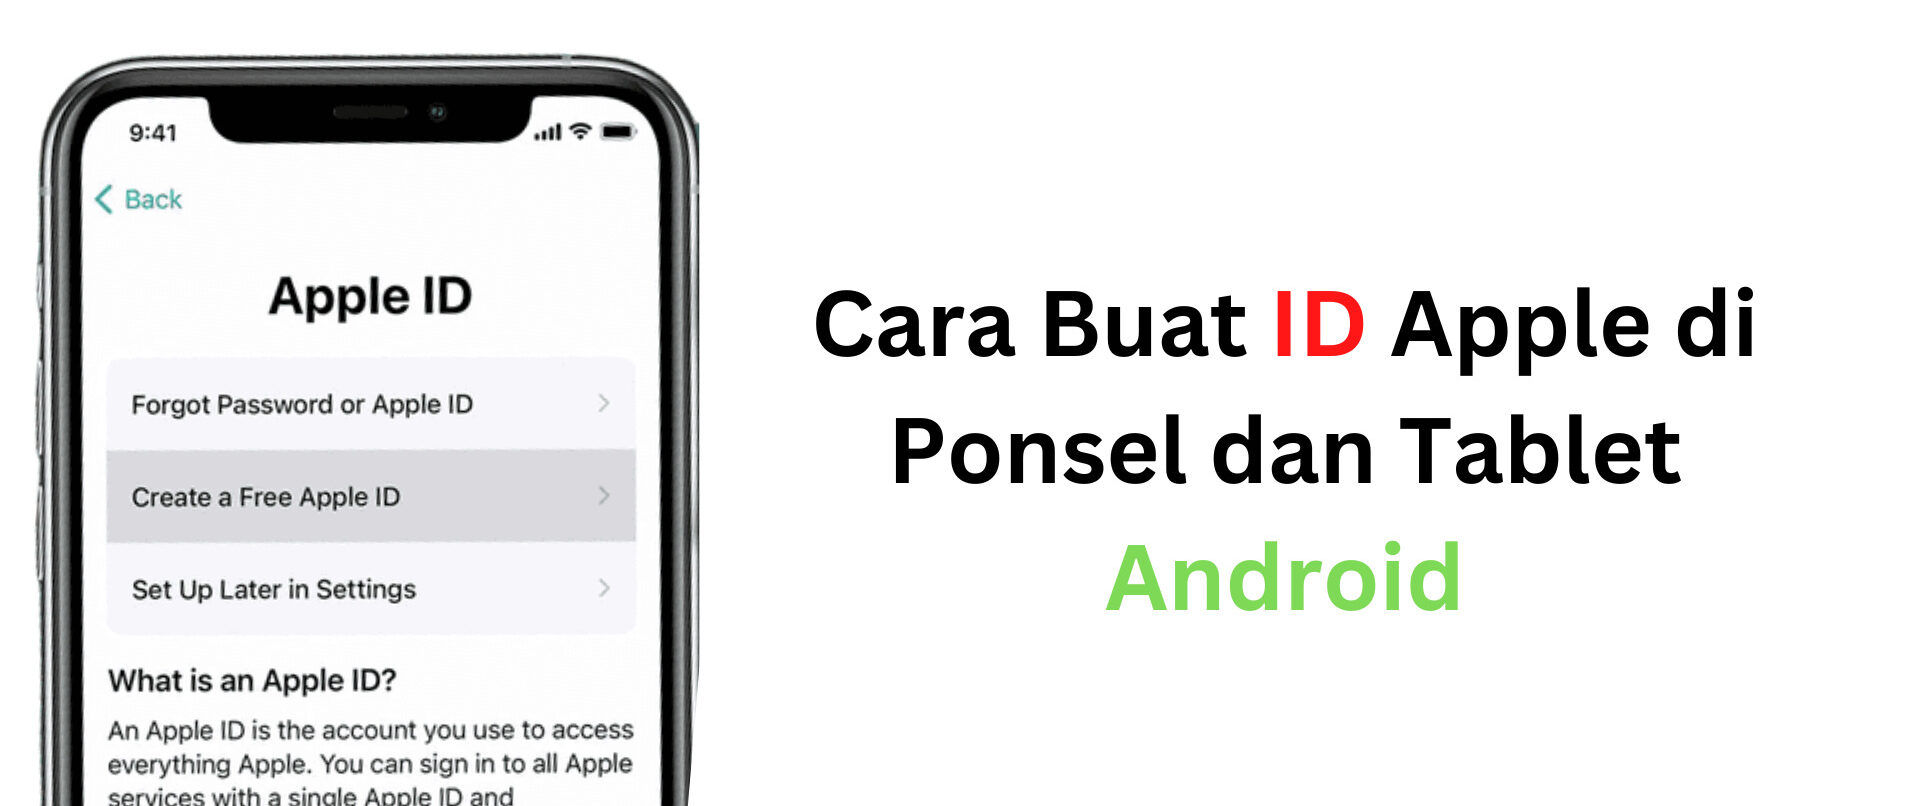 Cara Buat ID Apple di Ponsel dan Tablet Android